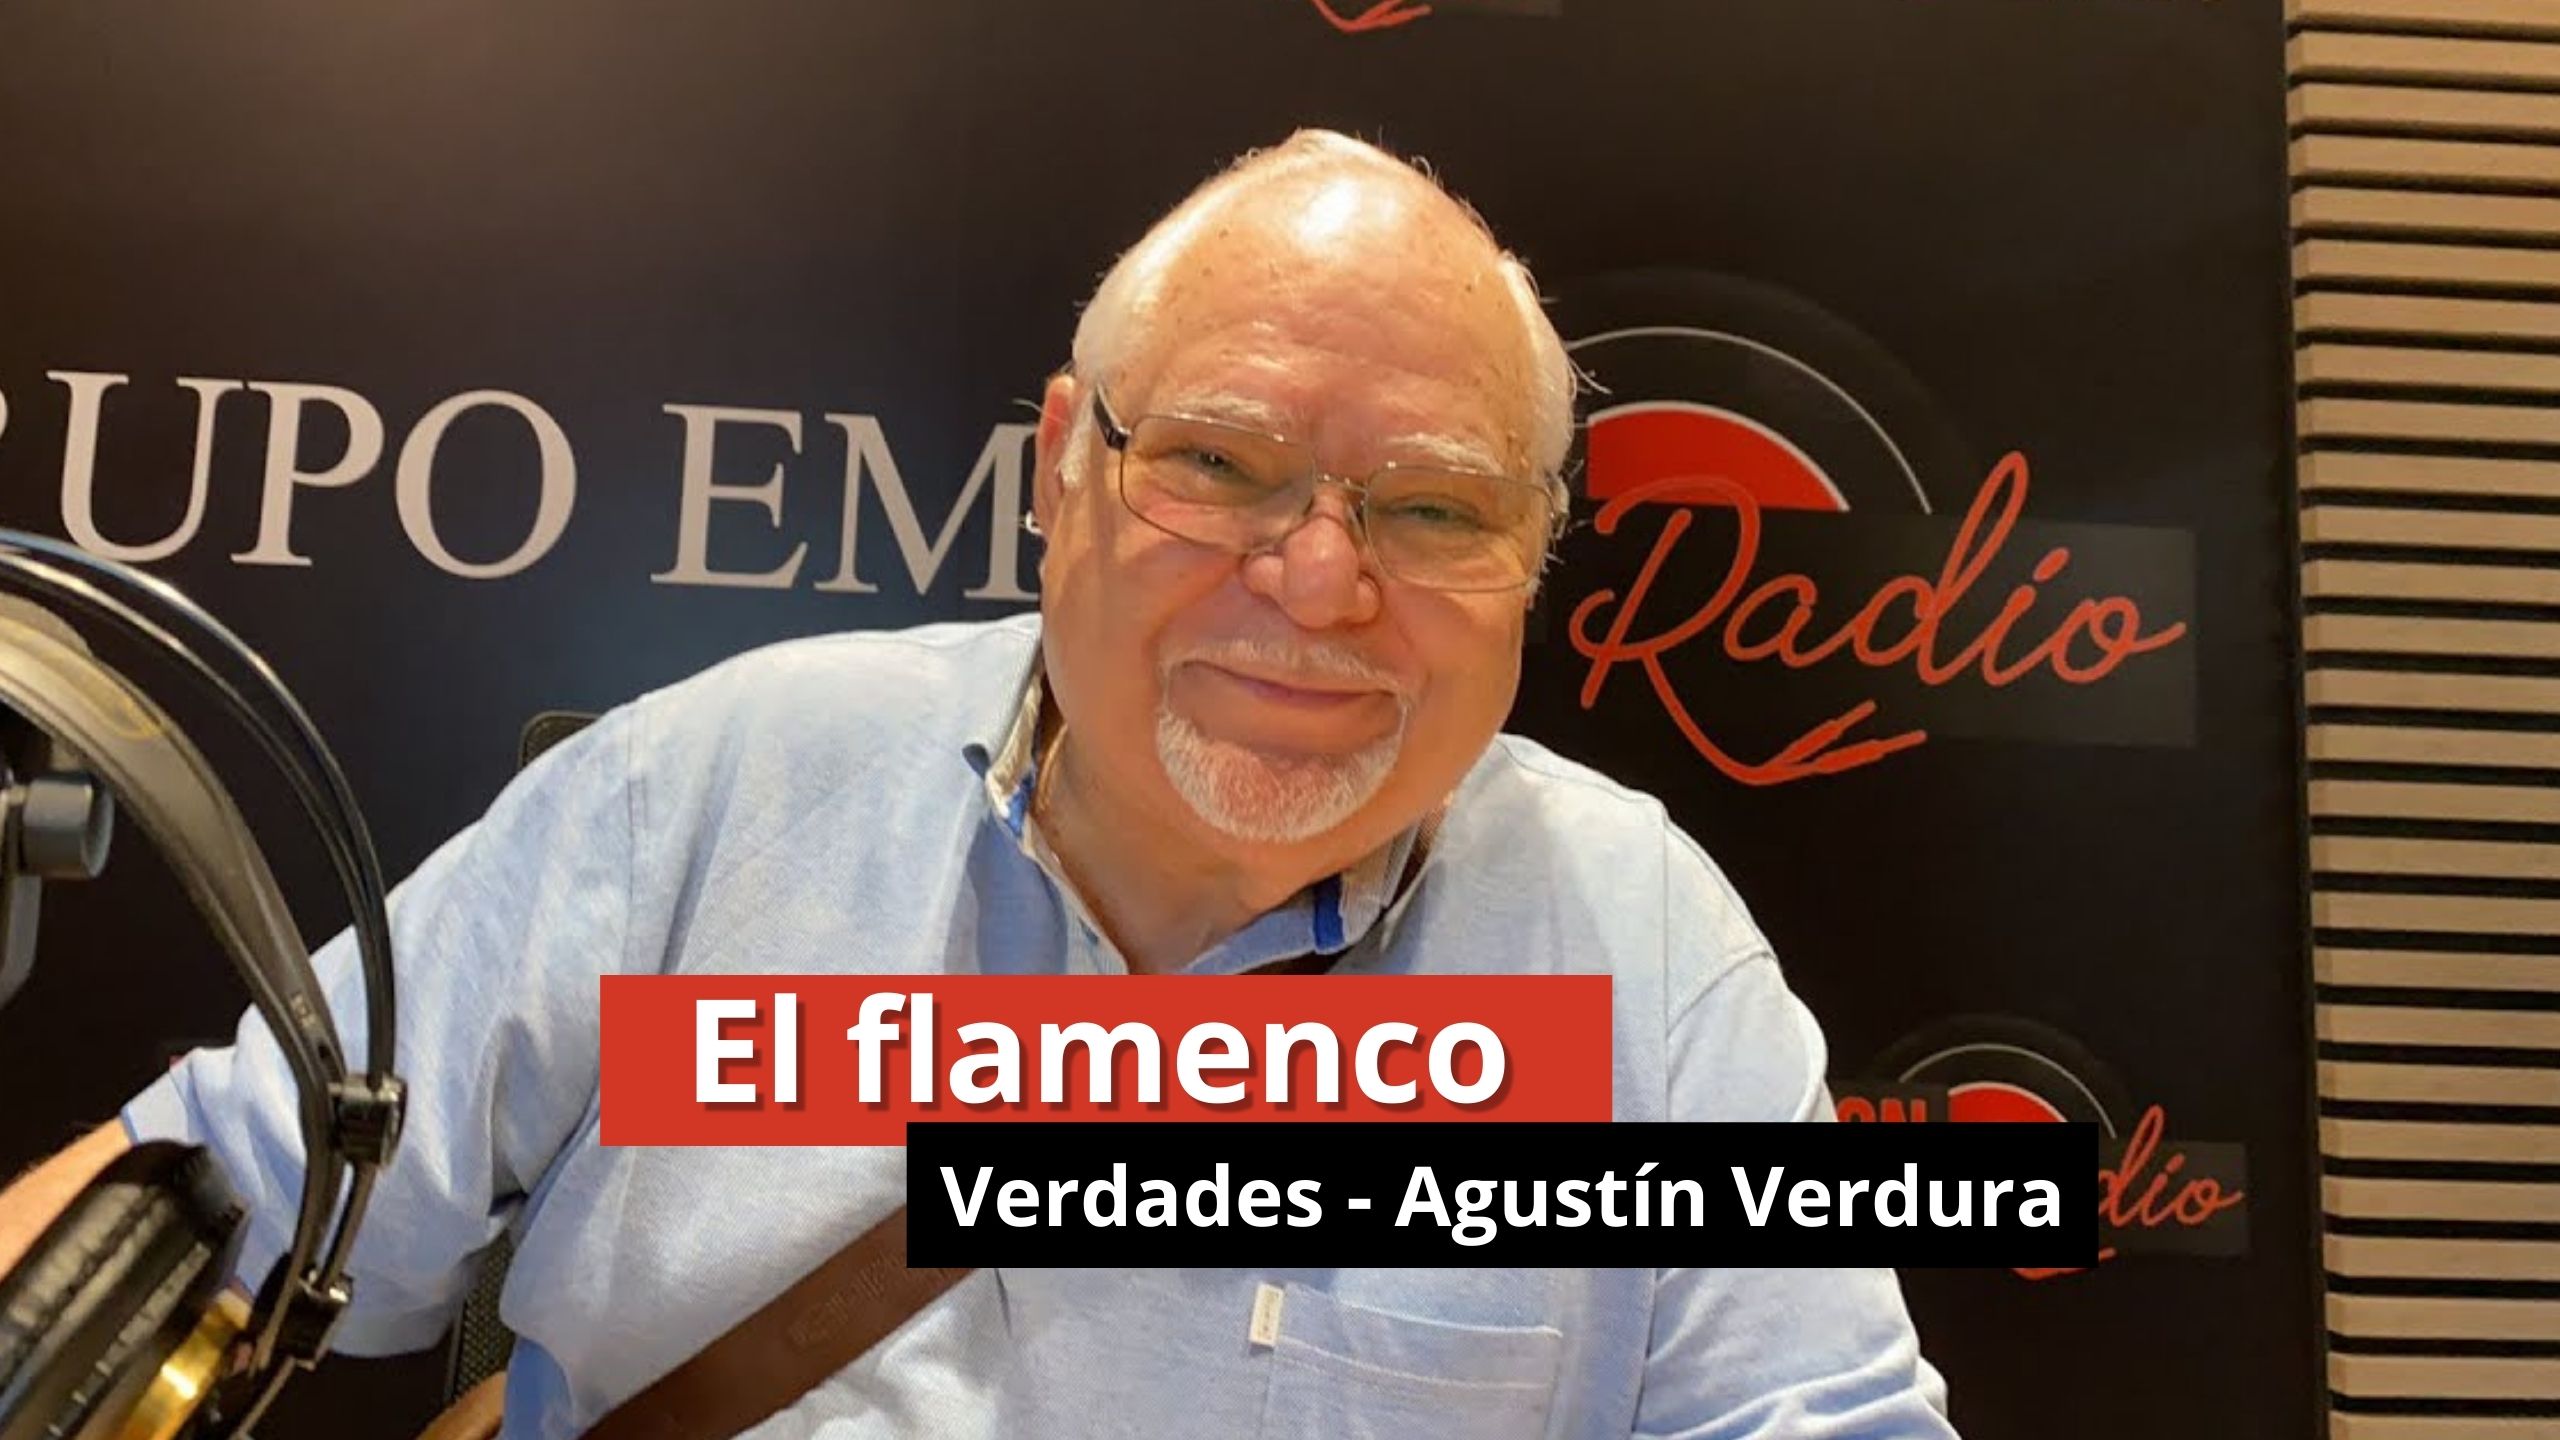 16-01-24 El Flamenco en Leganés - Verdades con Agustin Verdura